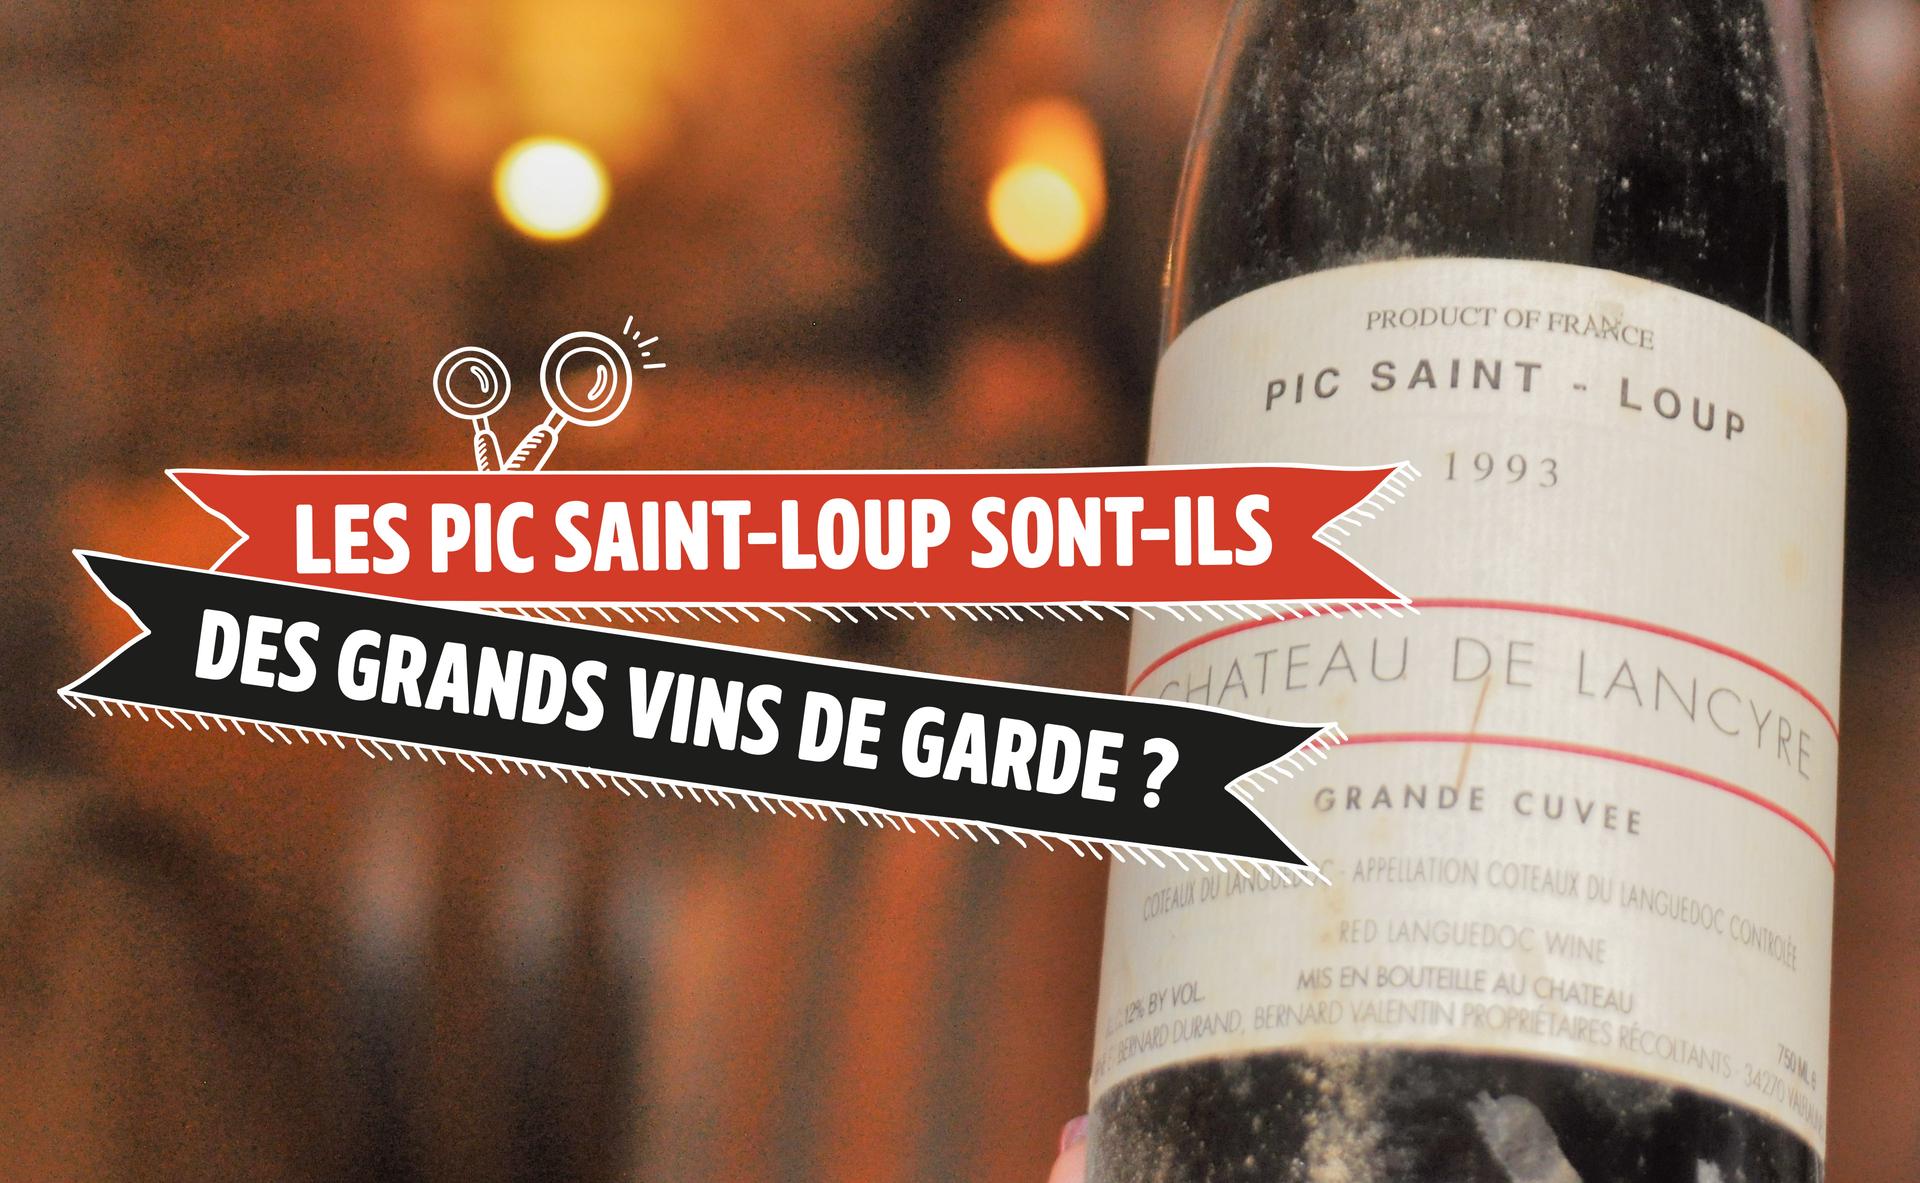 Les Pic Saint-Loup sont-ils des grands vins de garde ?